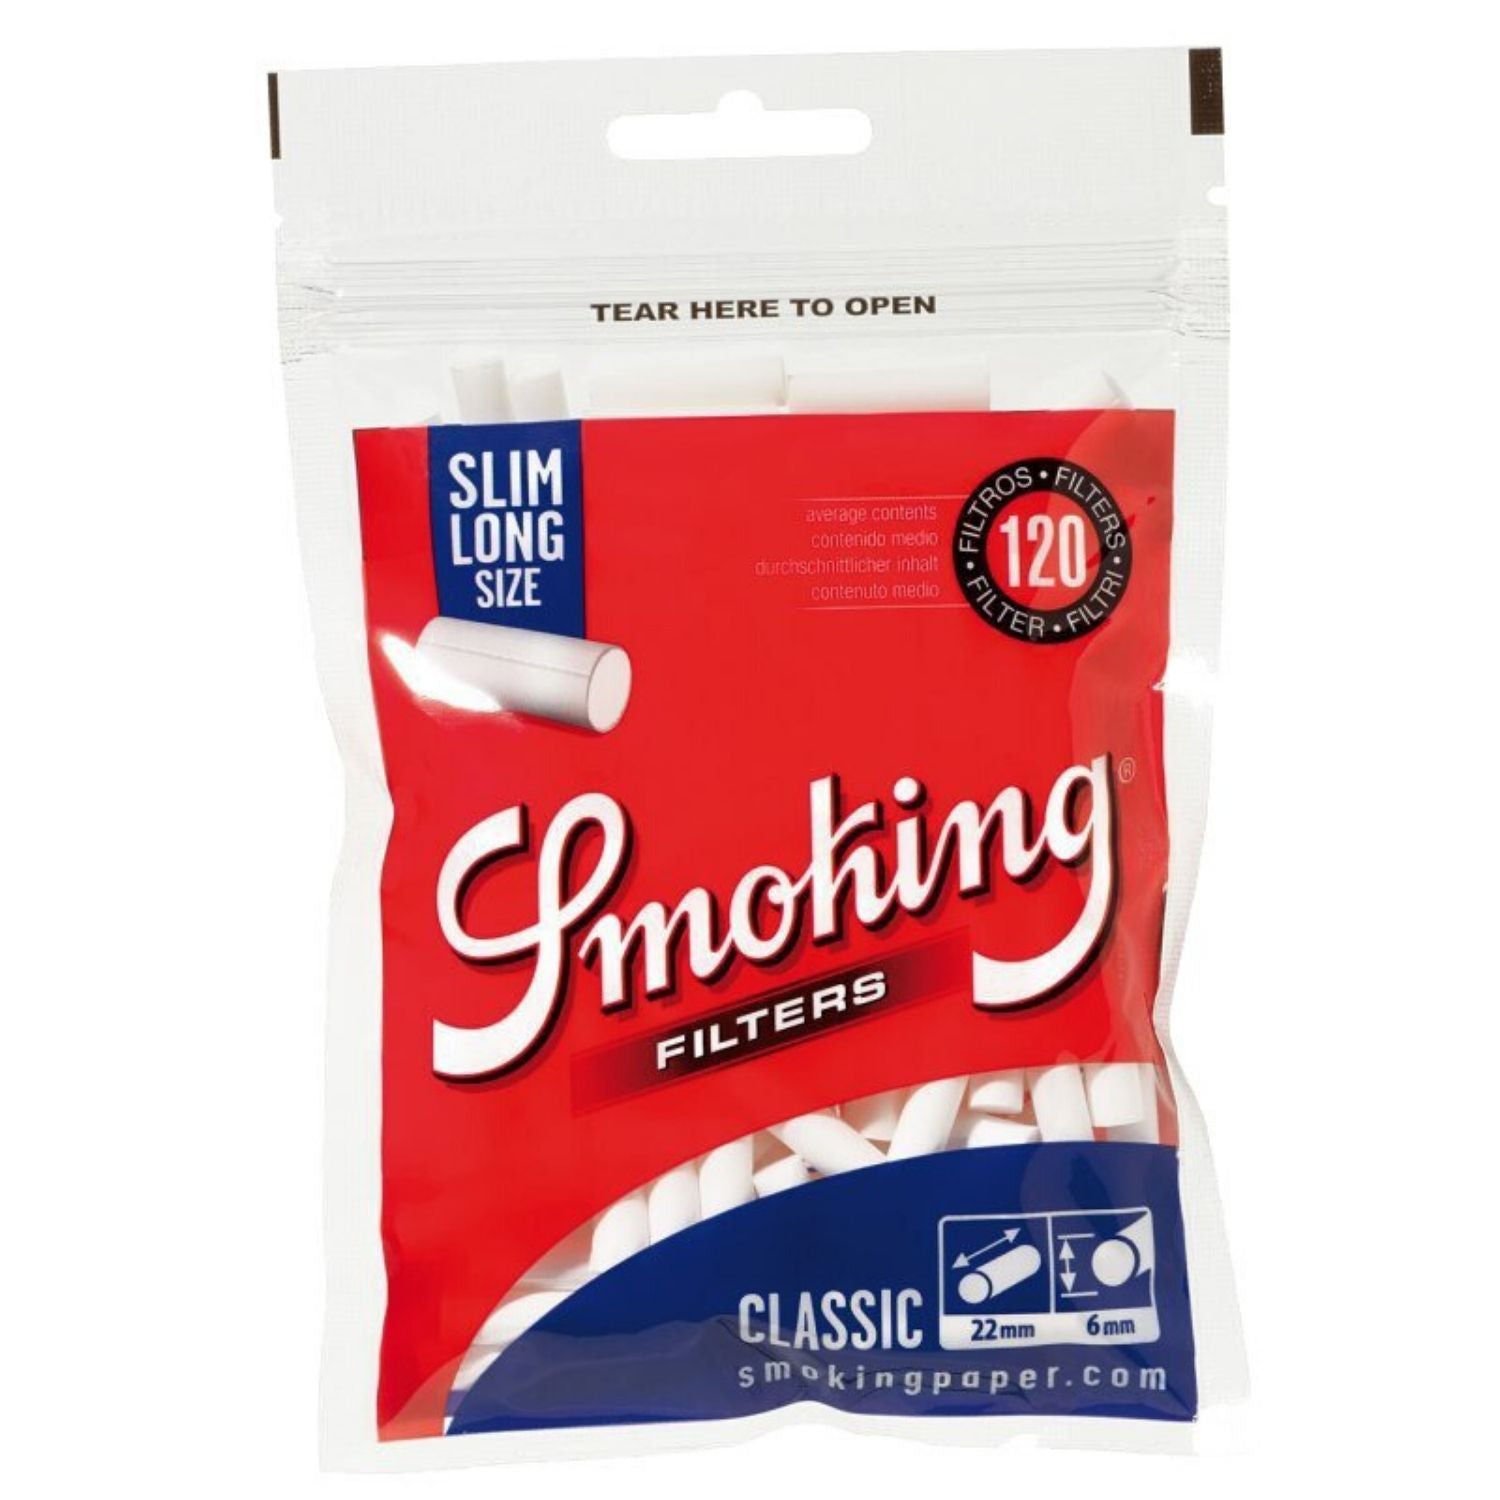 SMOKING Slim Long Cotton Filter - 120 Tips